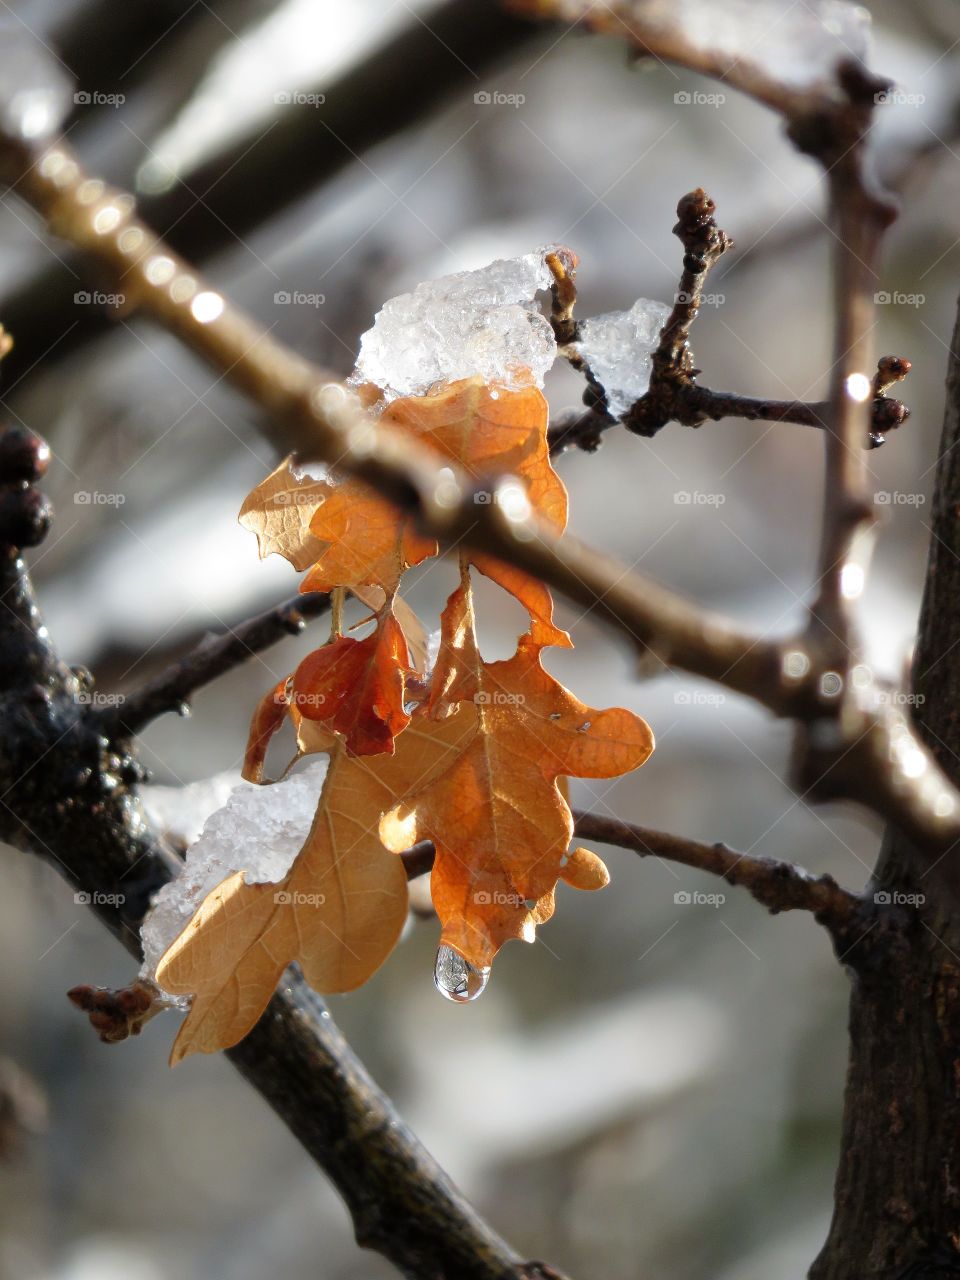 Snowy leaf on branch